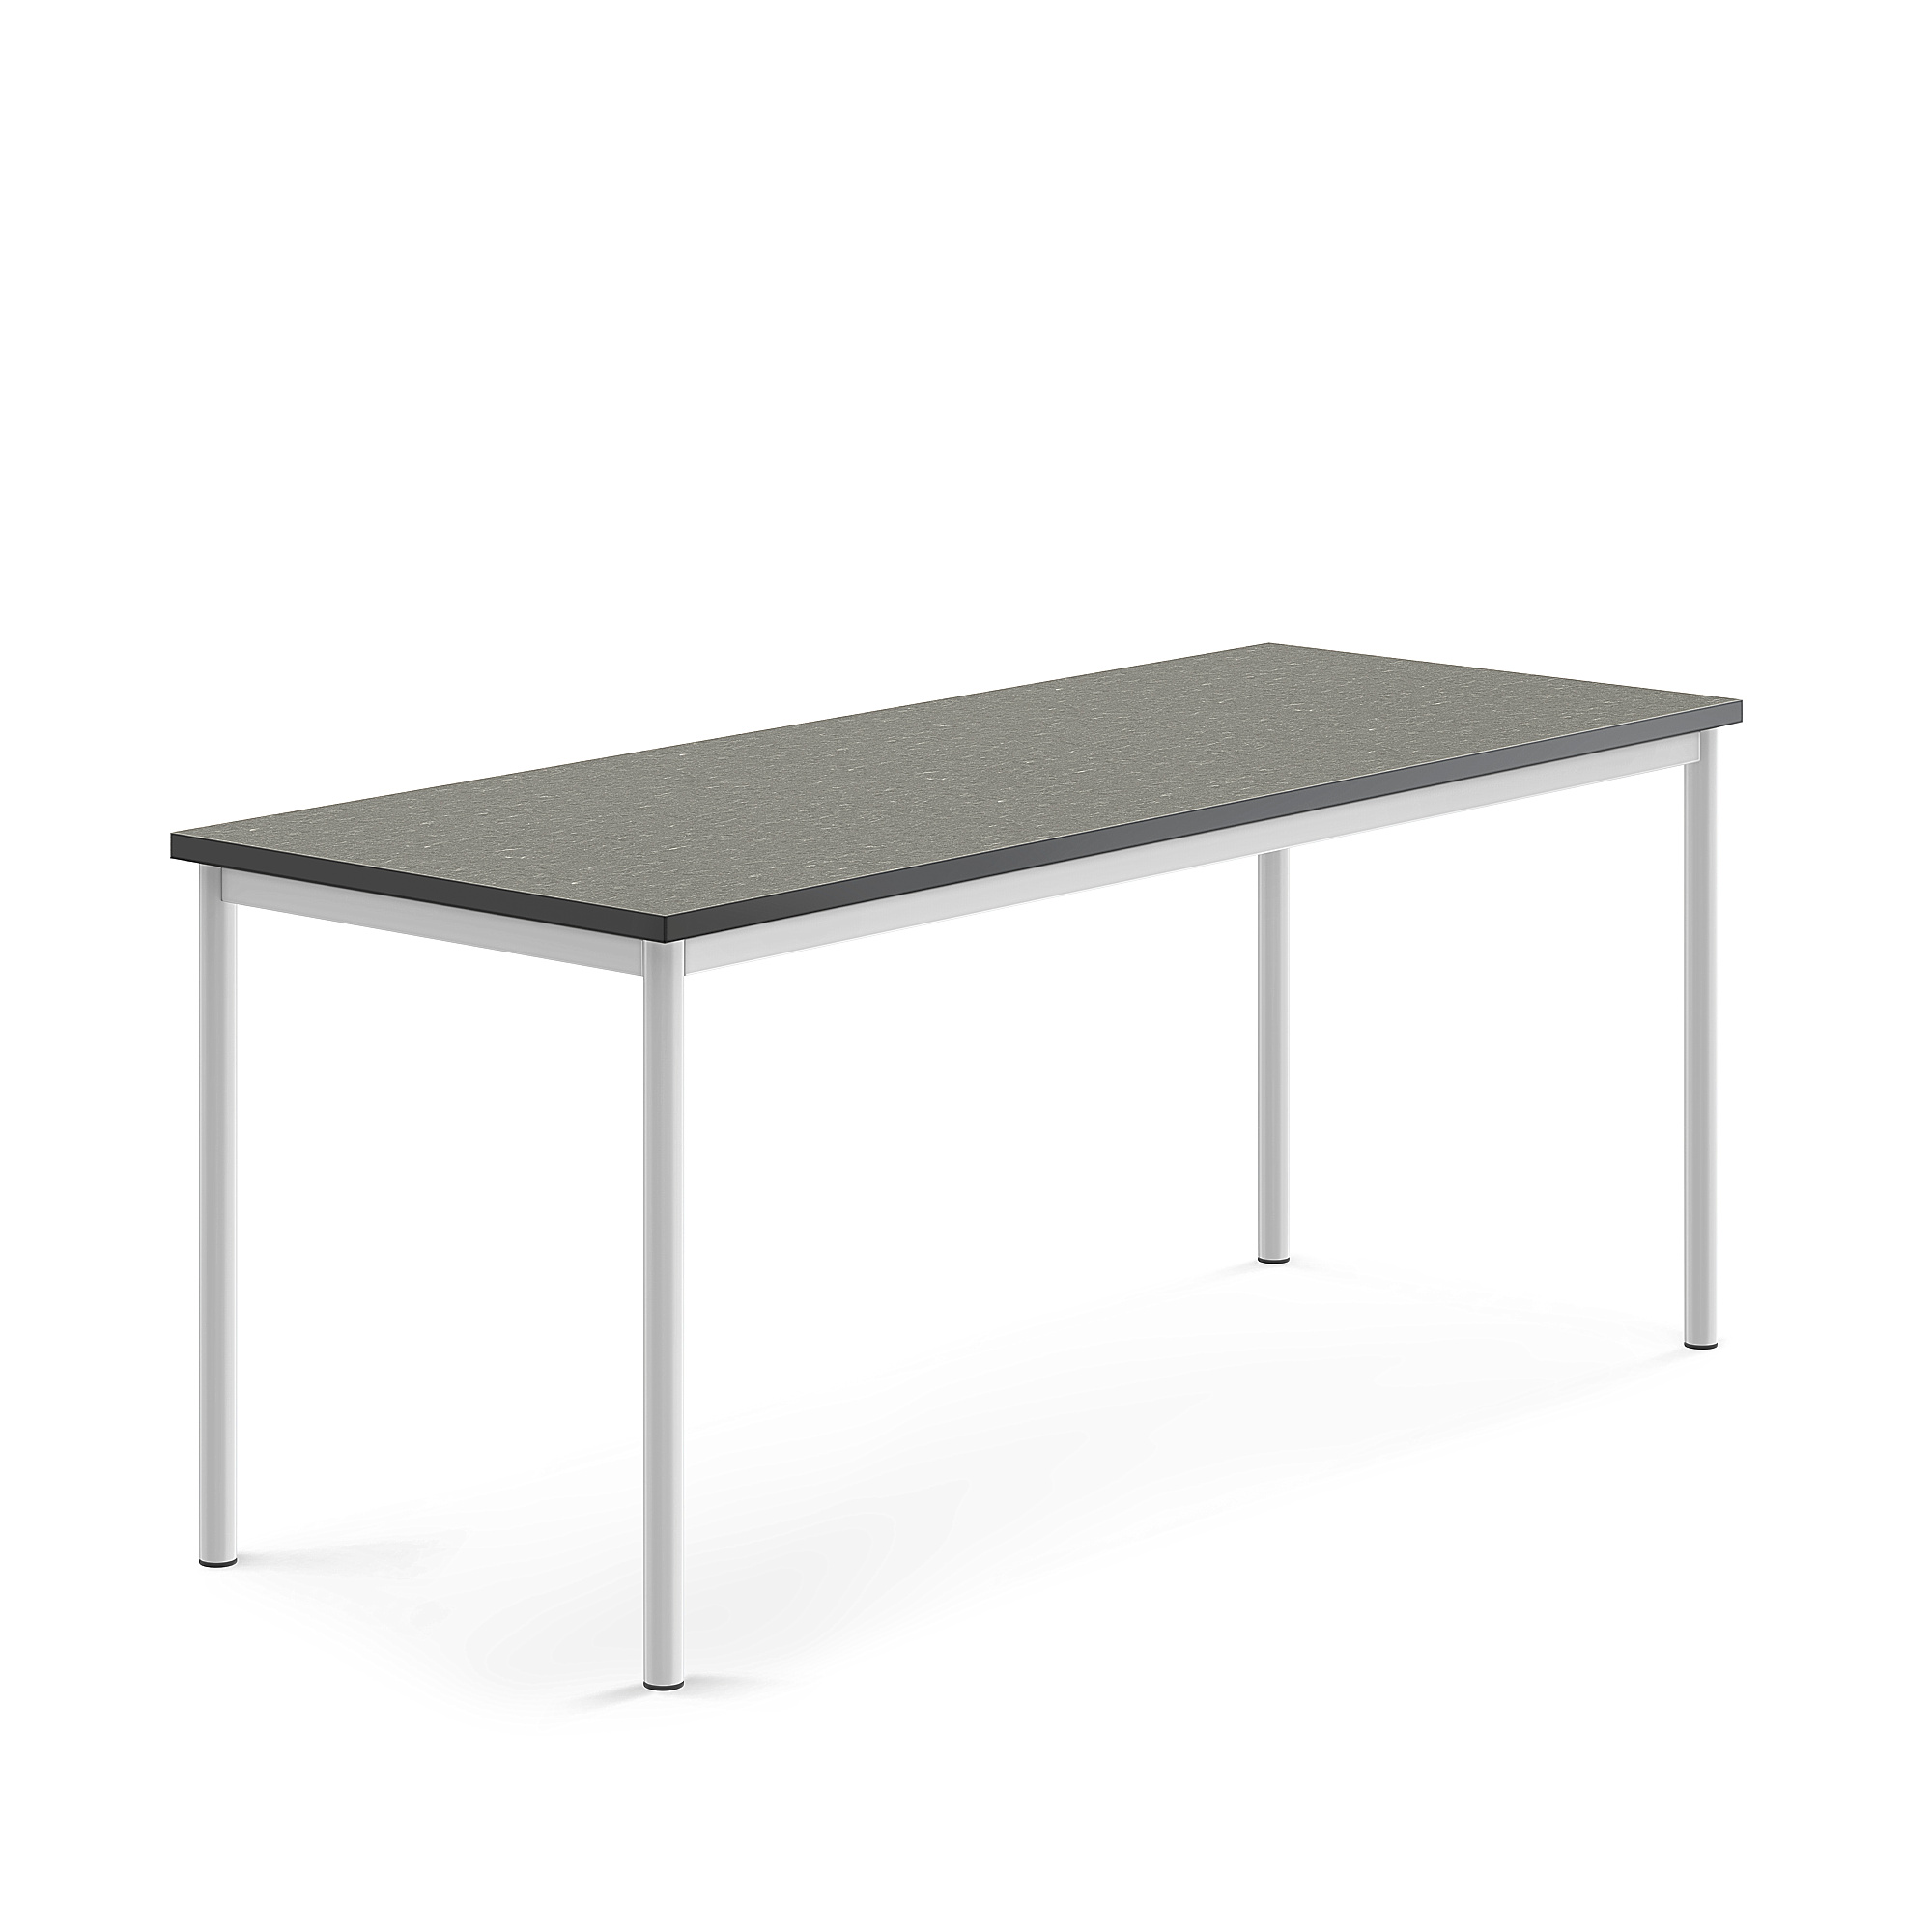 Stůl SONITUS, 1800x700x720 mm, bílé nohy, deska s linoleem, tmavě šedá